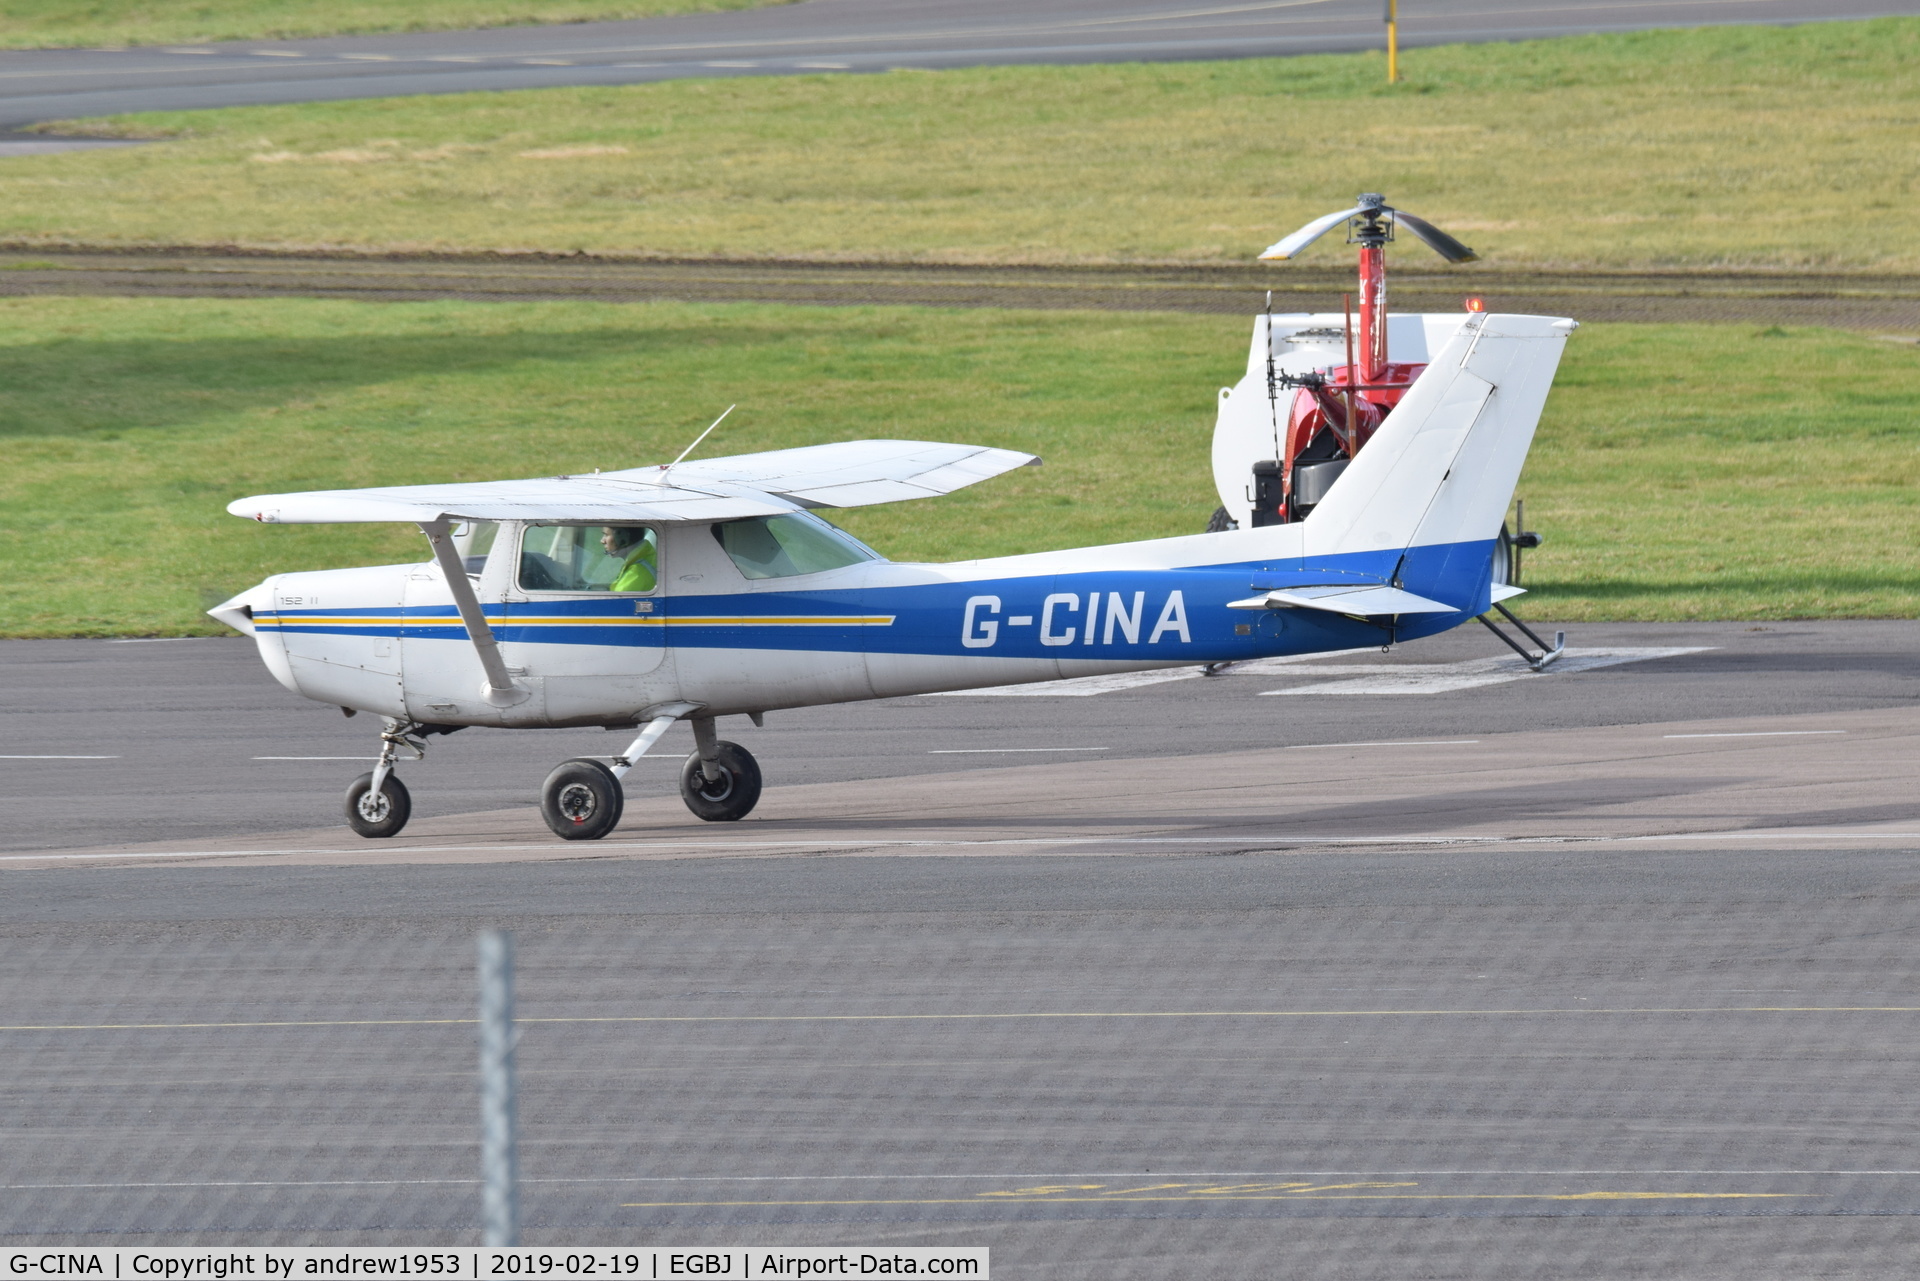 G-CINA, 1984 Cessna 152 C/N 152-85894, G-CINA at Gloucestershire Airport.